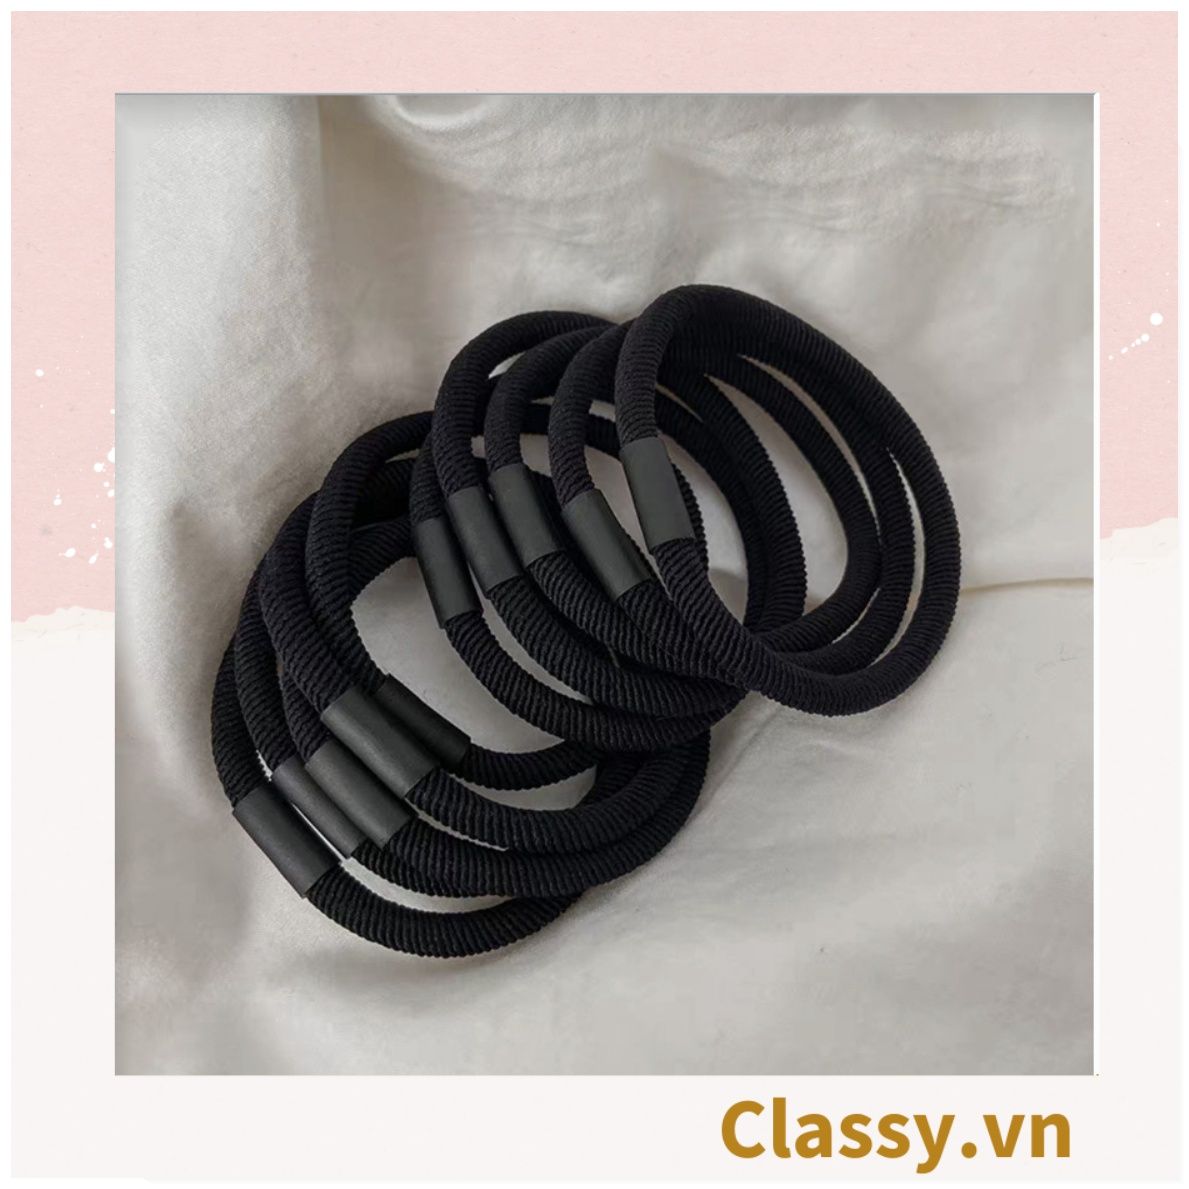  Combo 10 dây cột tóc cao cấp siêu bền Classy, phong cách tối giản màu sắc tông đen và tông be PK1755 